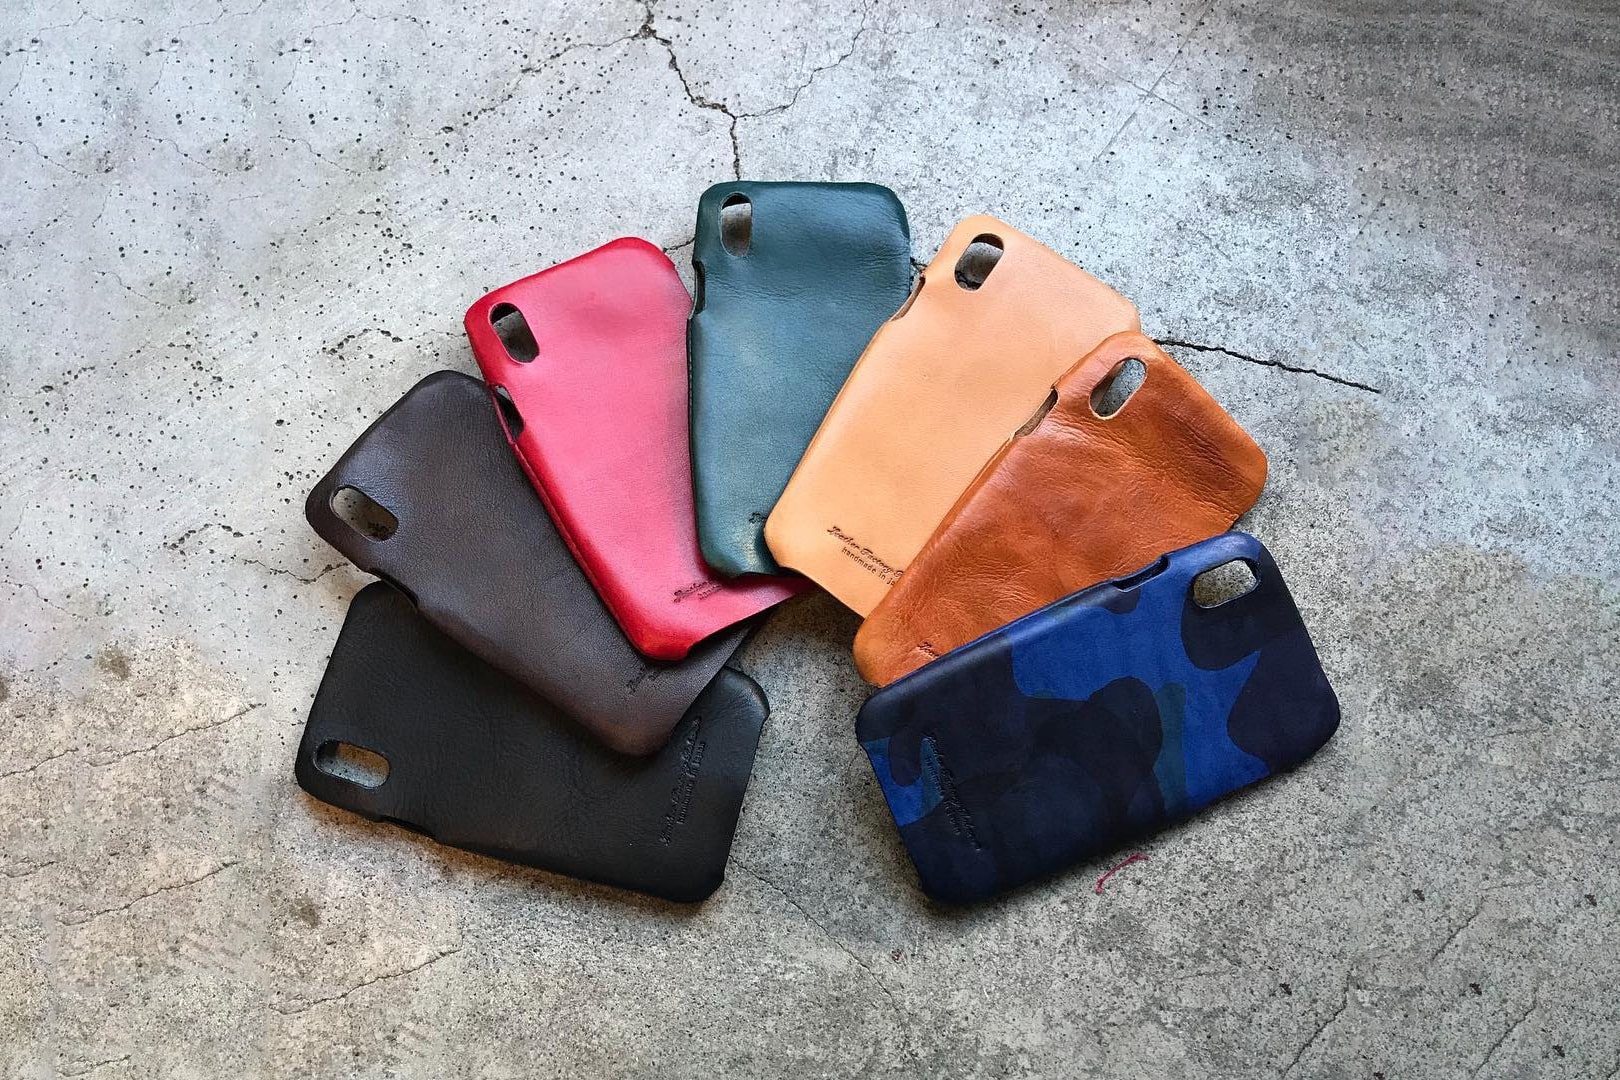 引頸以待 - Leather Factory Roberu 釋出 iPhone X 專屬皮革保護套